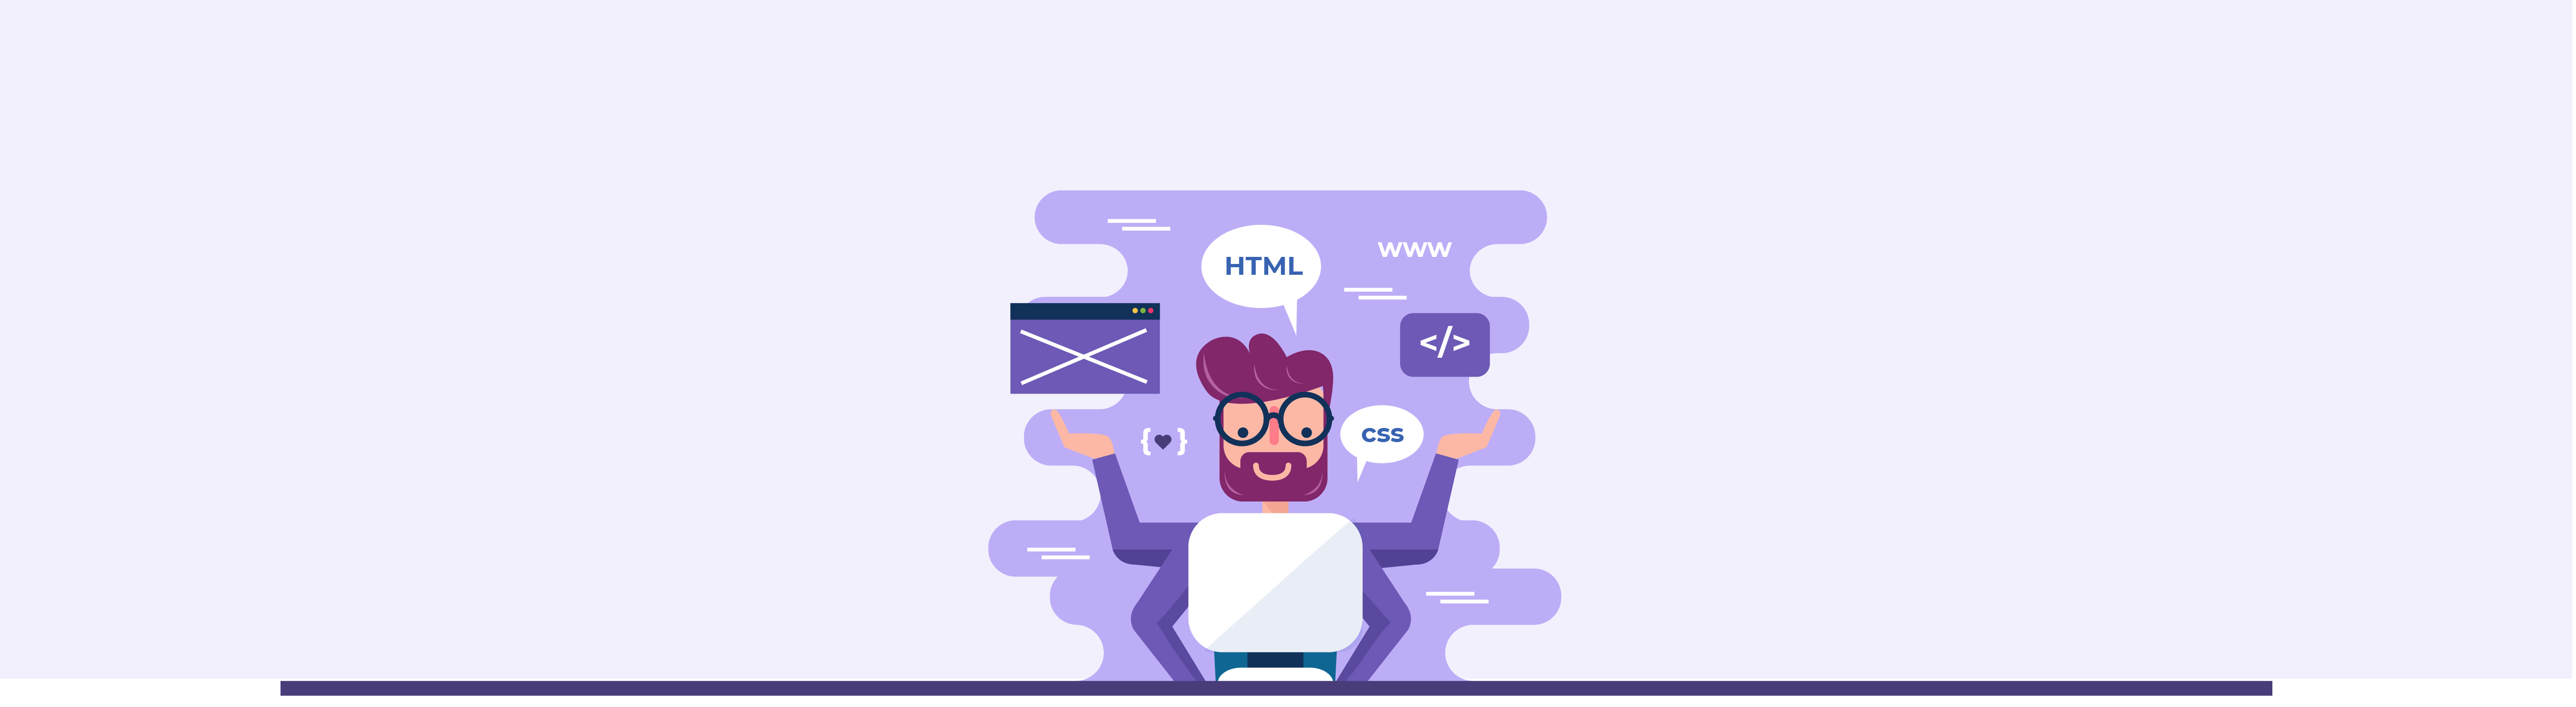 e-commerce website development banner image